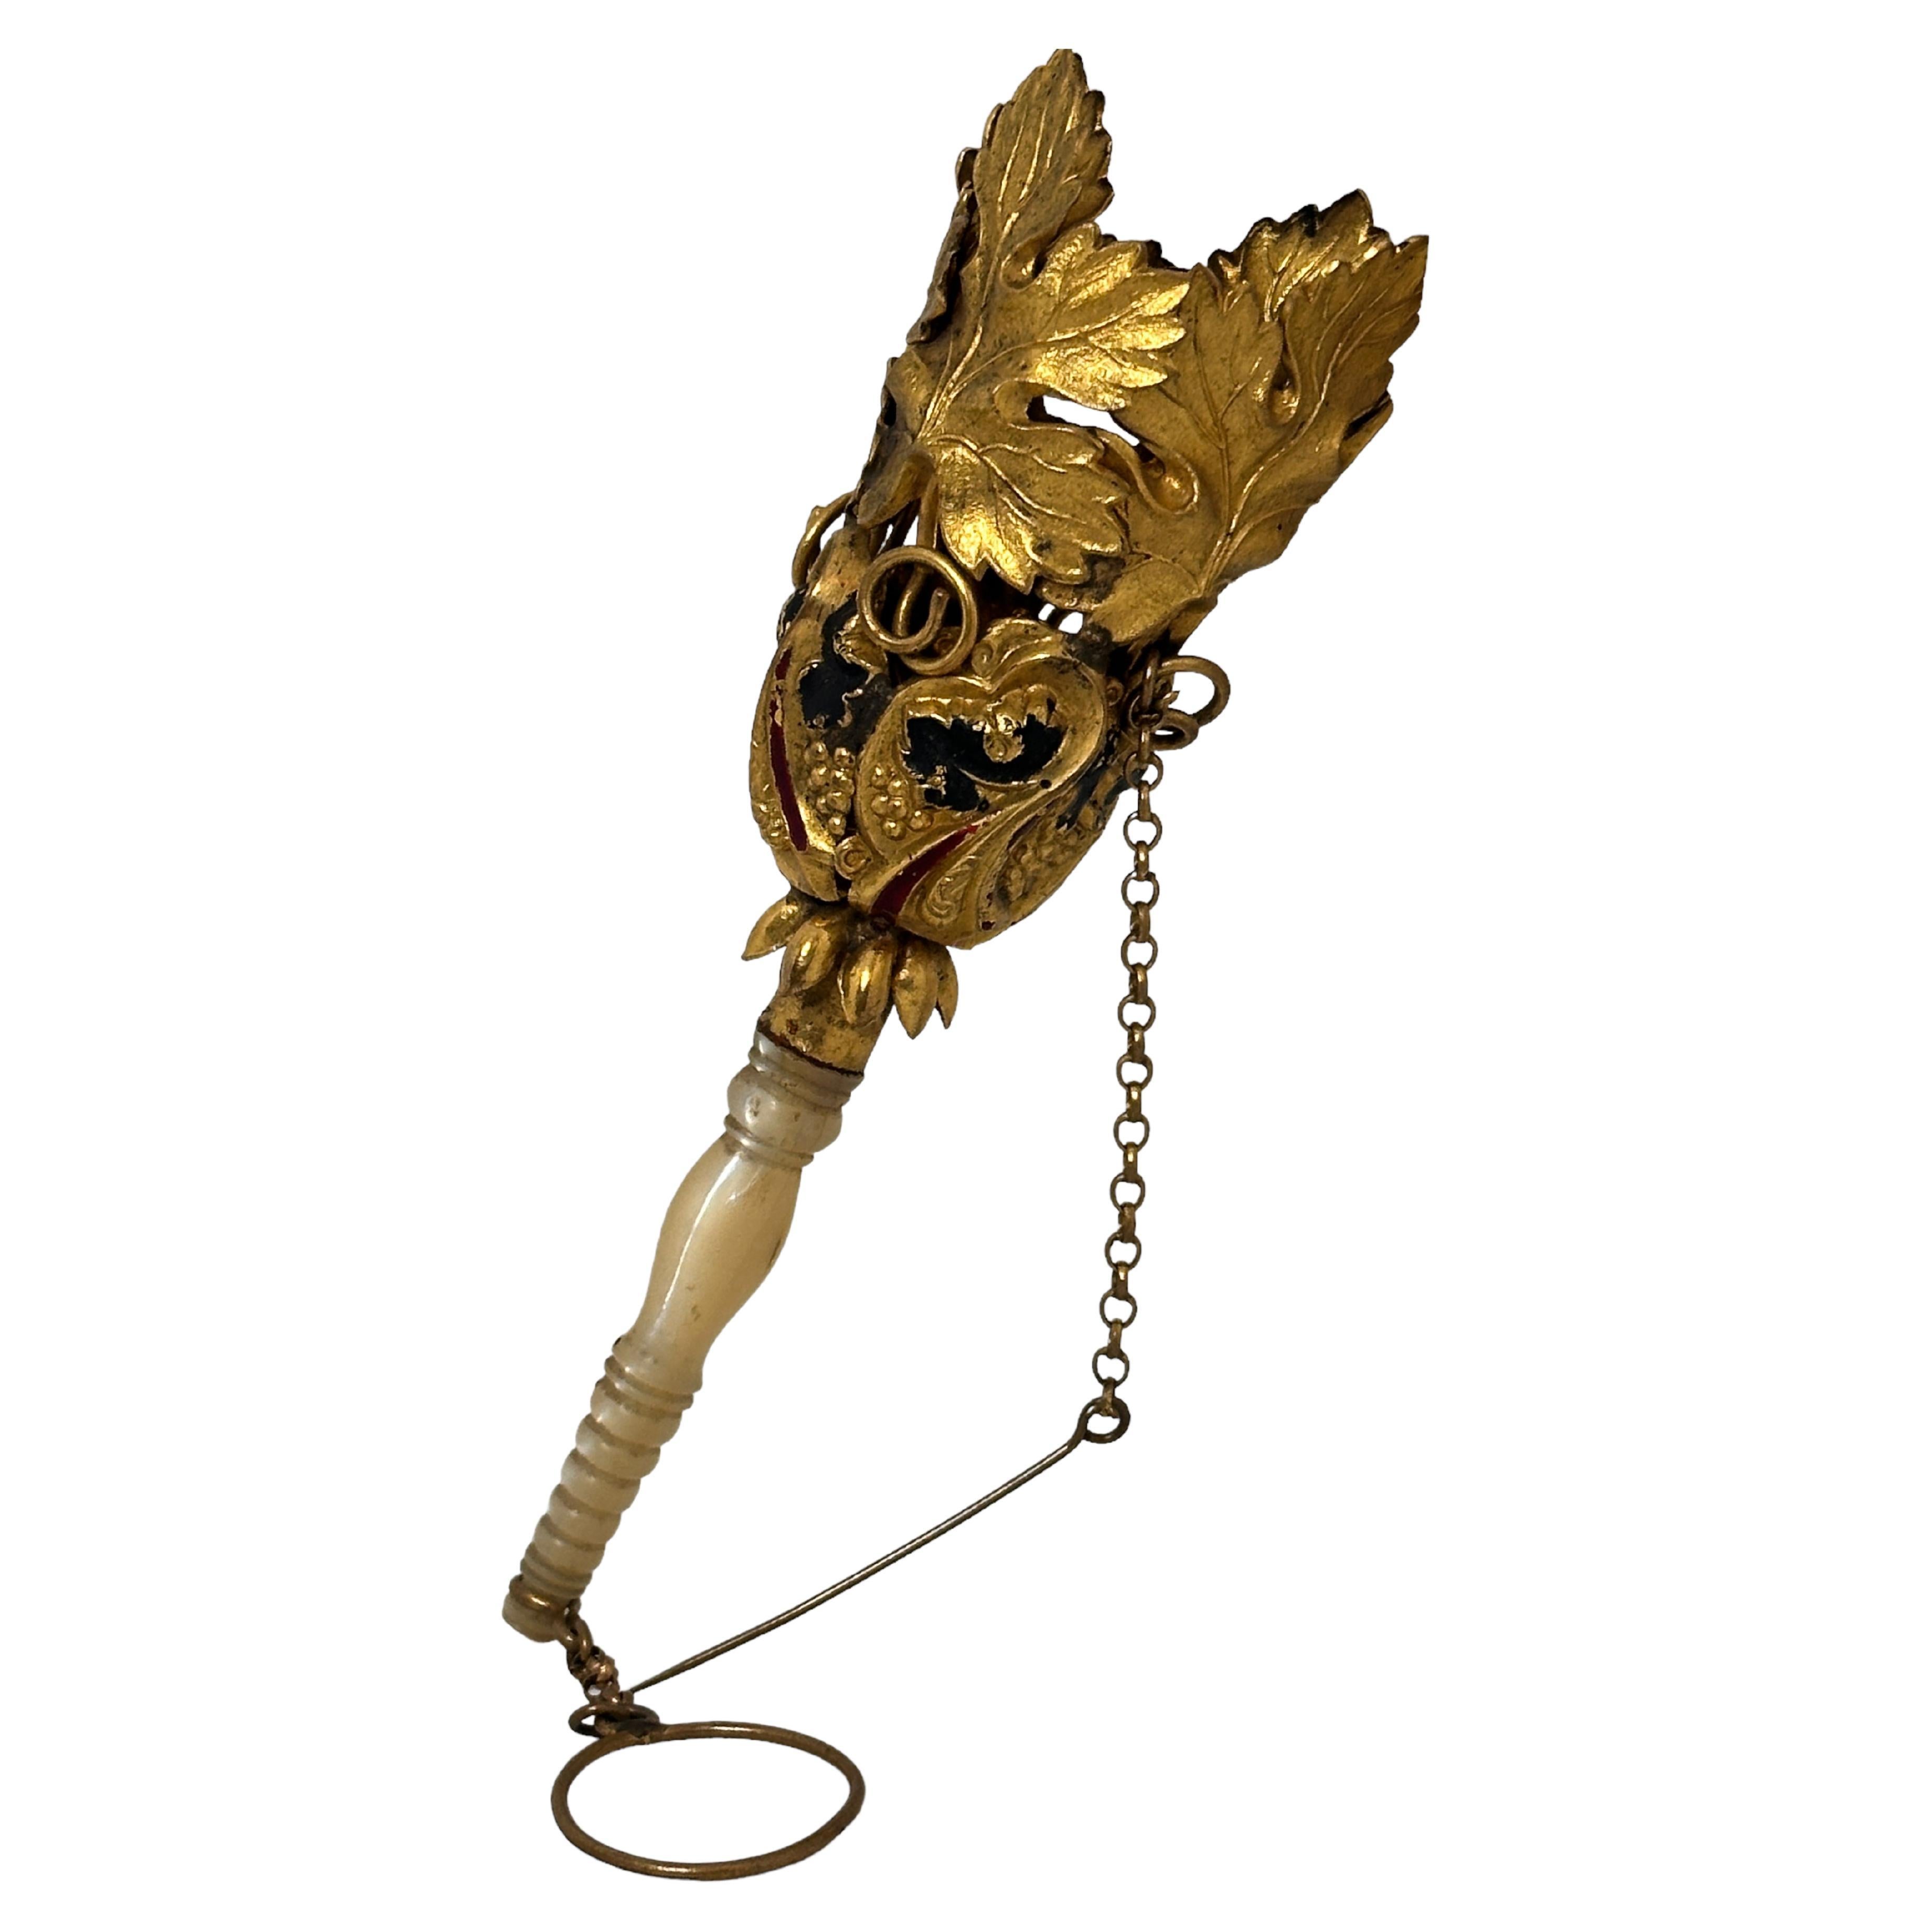 Diese Auflistung ist für eine schöne österreichische vergoldetem Metall Tussie mussie (Blumenhalter) mit geprägten Trauben und Weinblätter und ein Fingerring Griff, circa 1860s. Aufwändig applizierte, restgeschmückte 